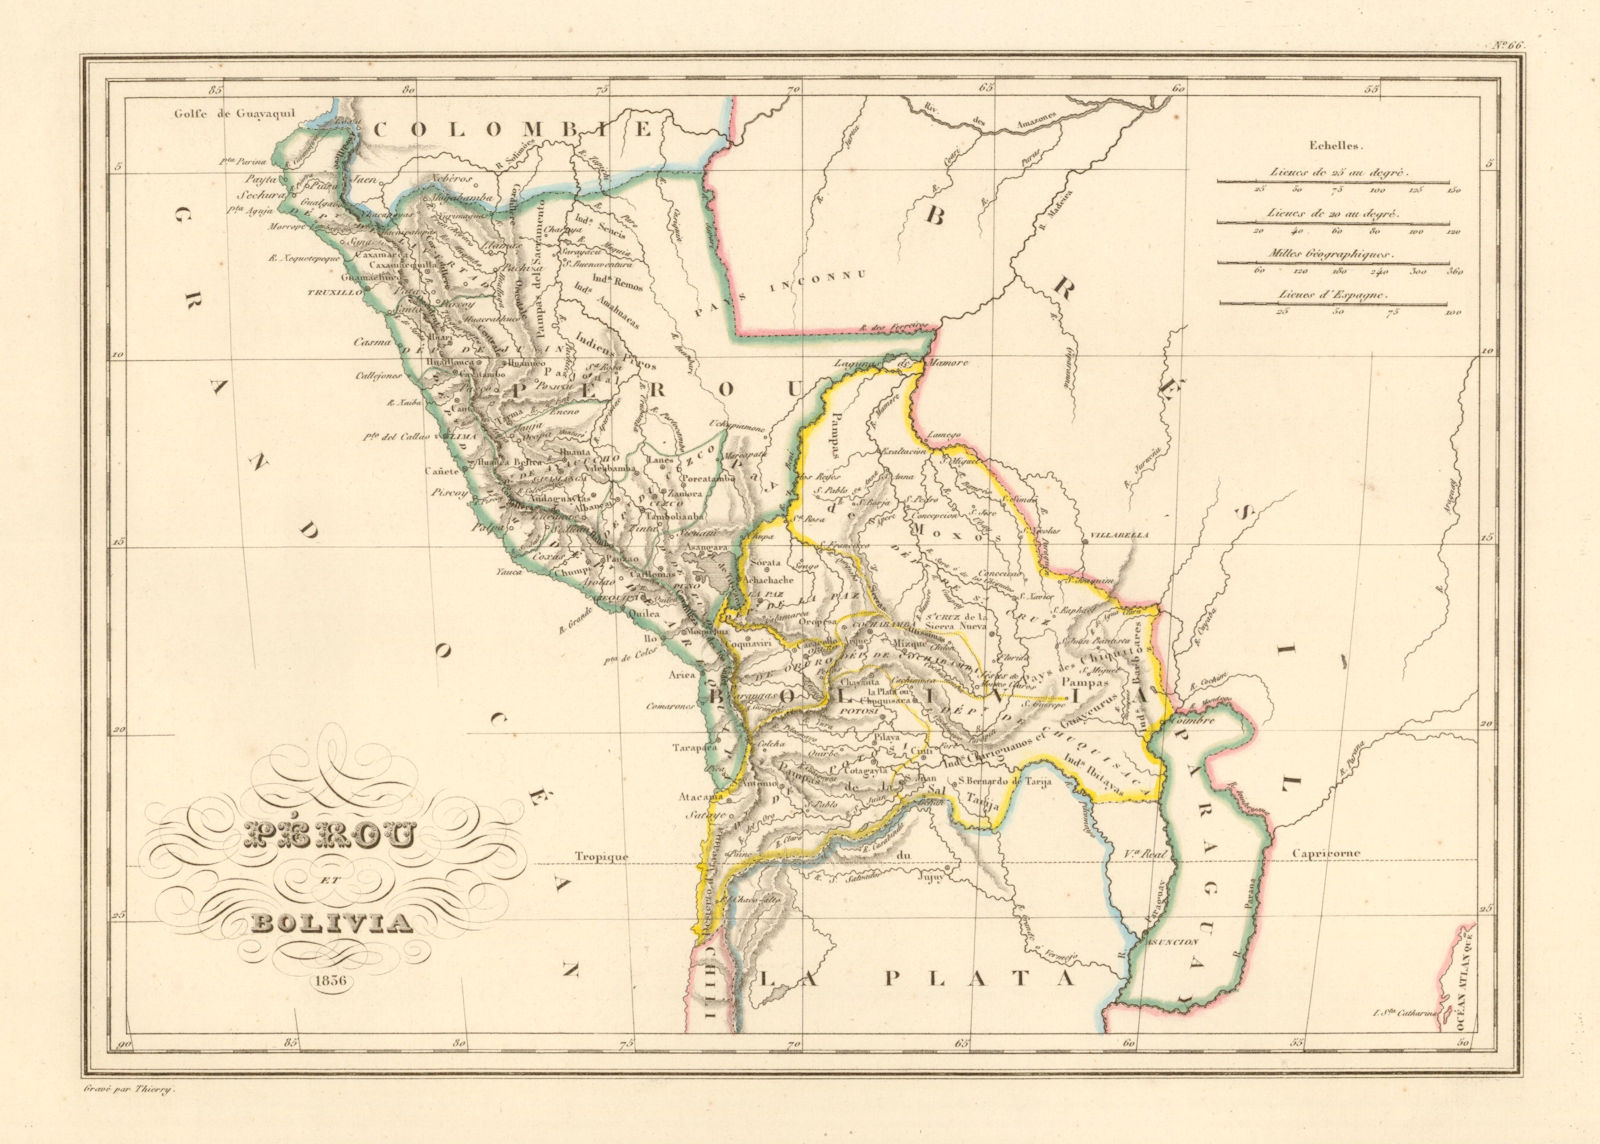 'Perou et Bolivia' by Malte-Brun. Peru & Bolivia w/ Litoral coast 1836 old map